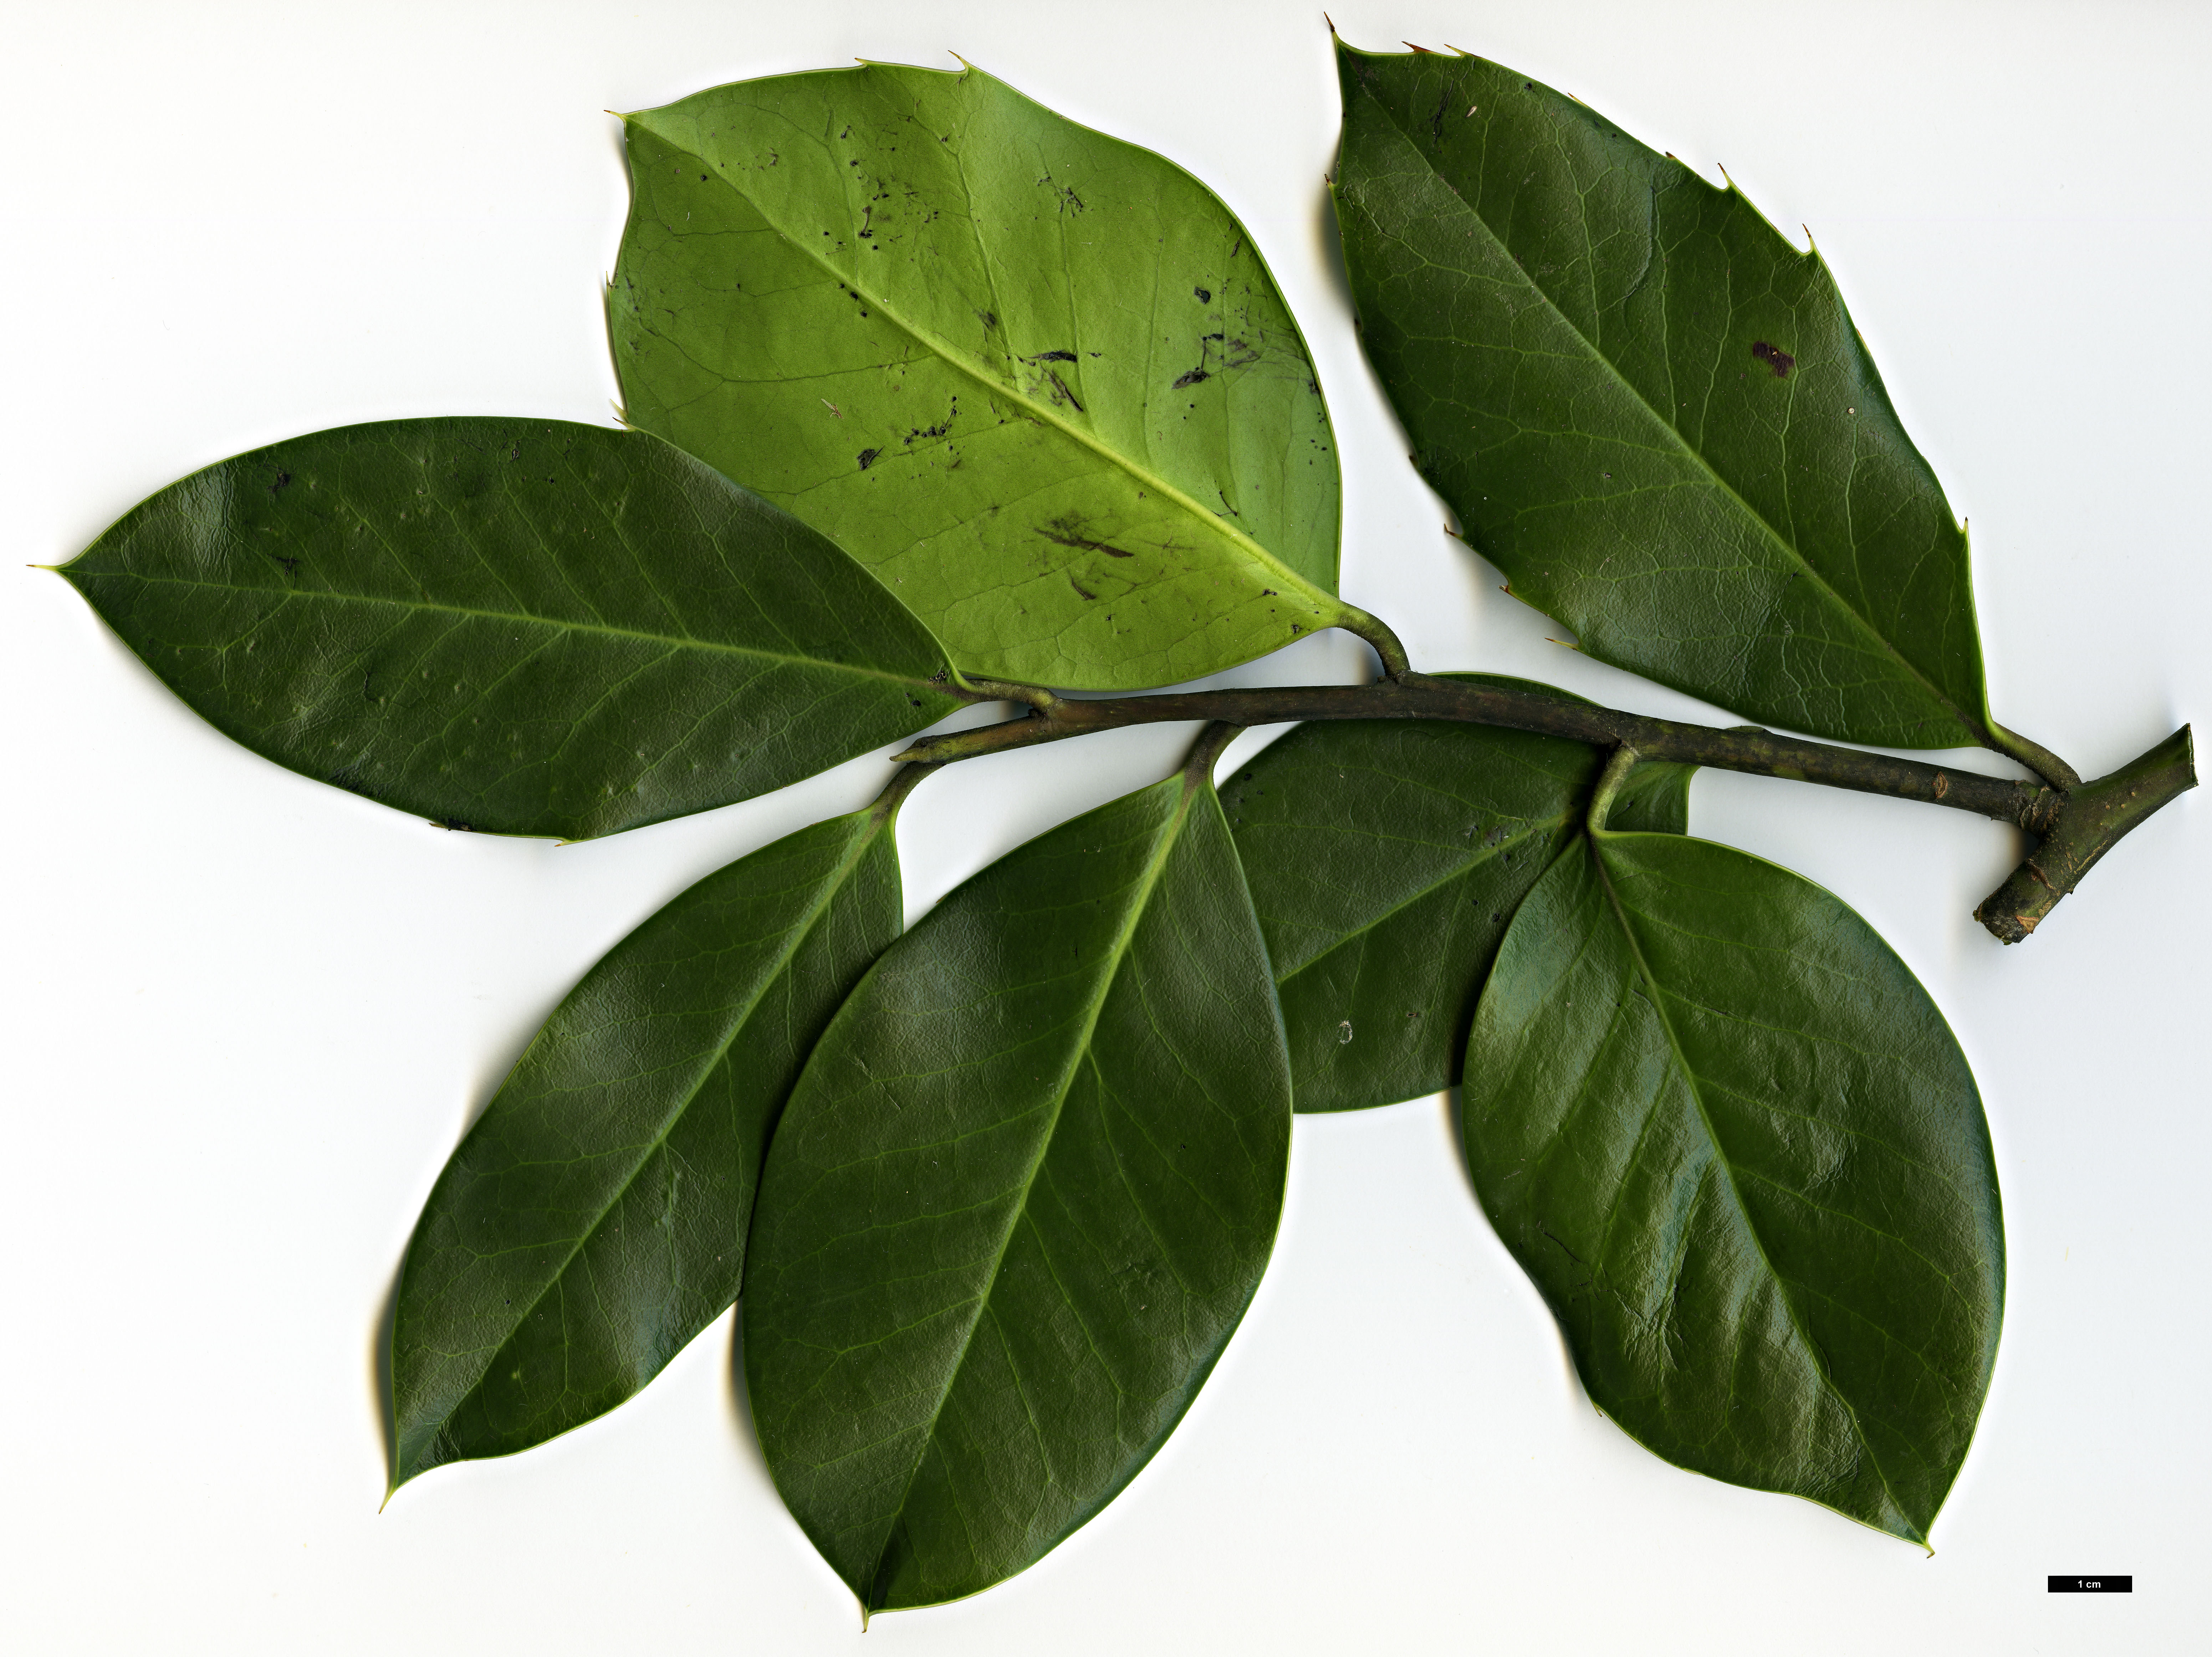 High resolution image: Family: Aquifoliaceae - Genus: Ilex - Taxon: perado - SpeciesSub: subsp. platyphylla